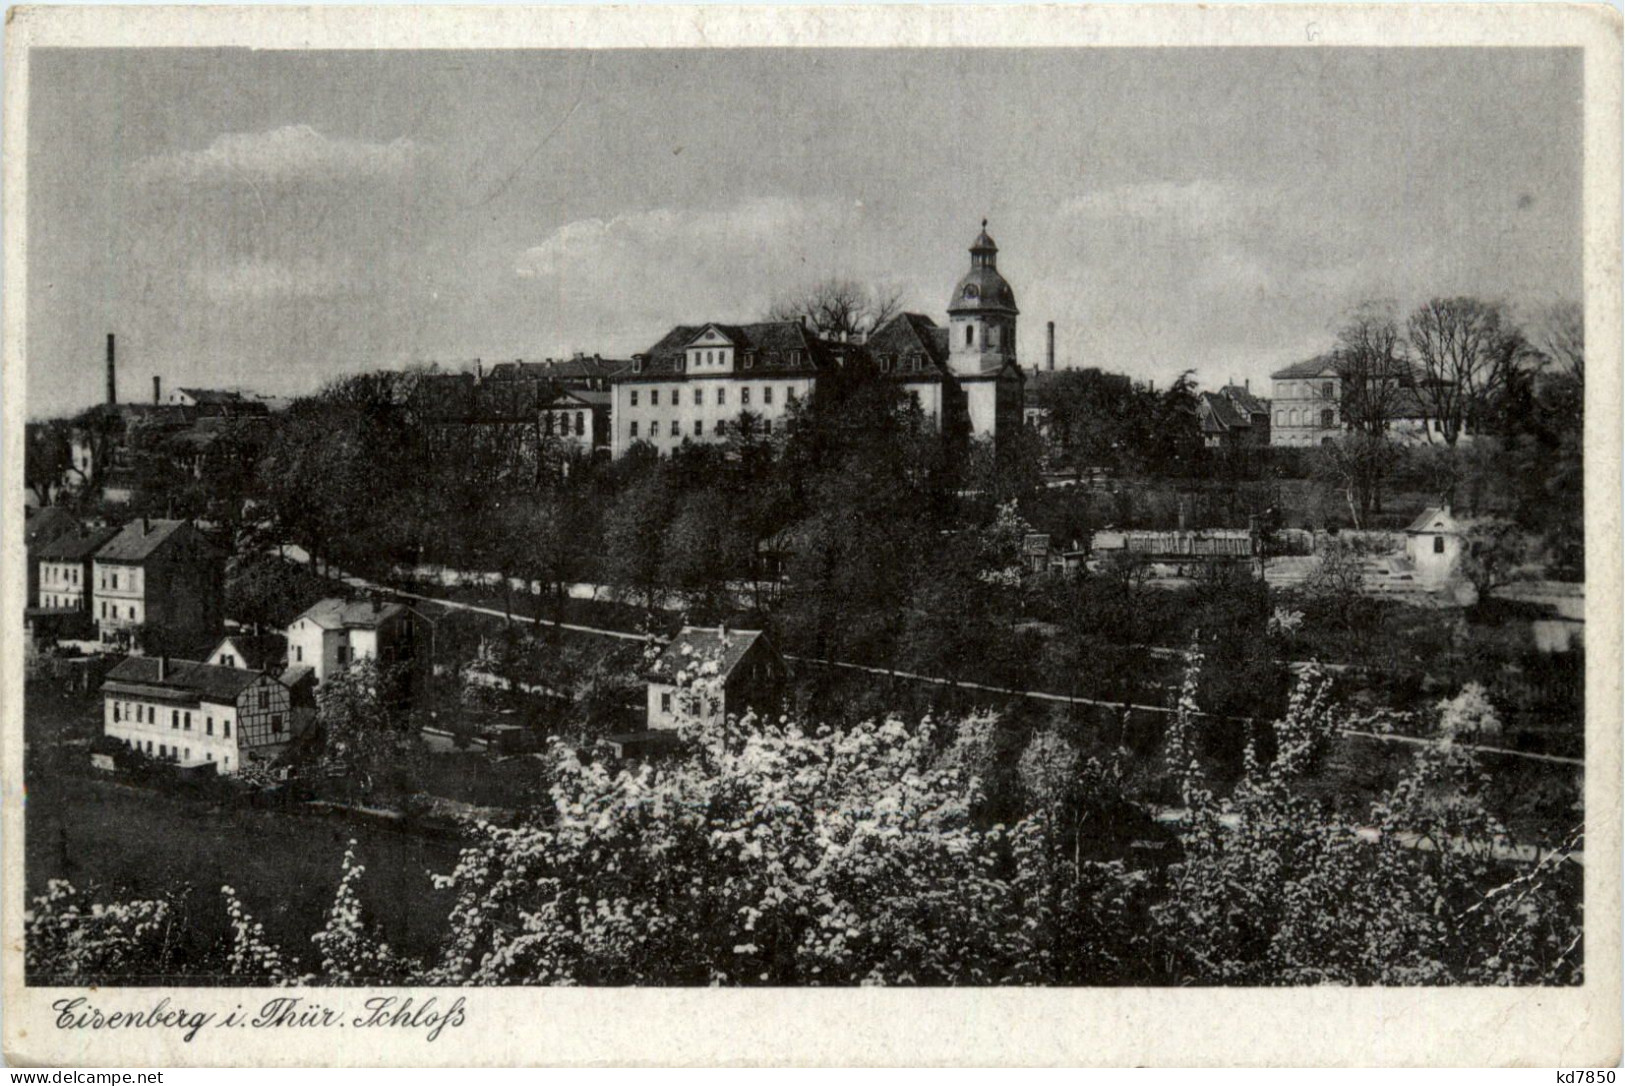 Eisenberg, Schloss - Eisenberg